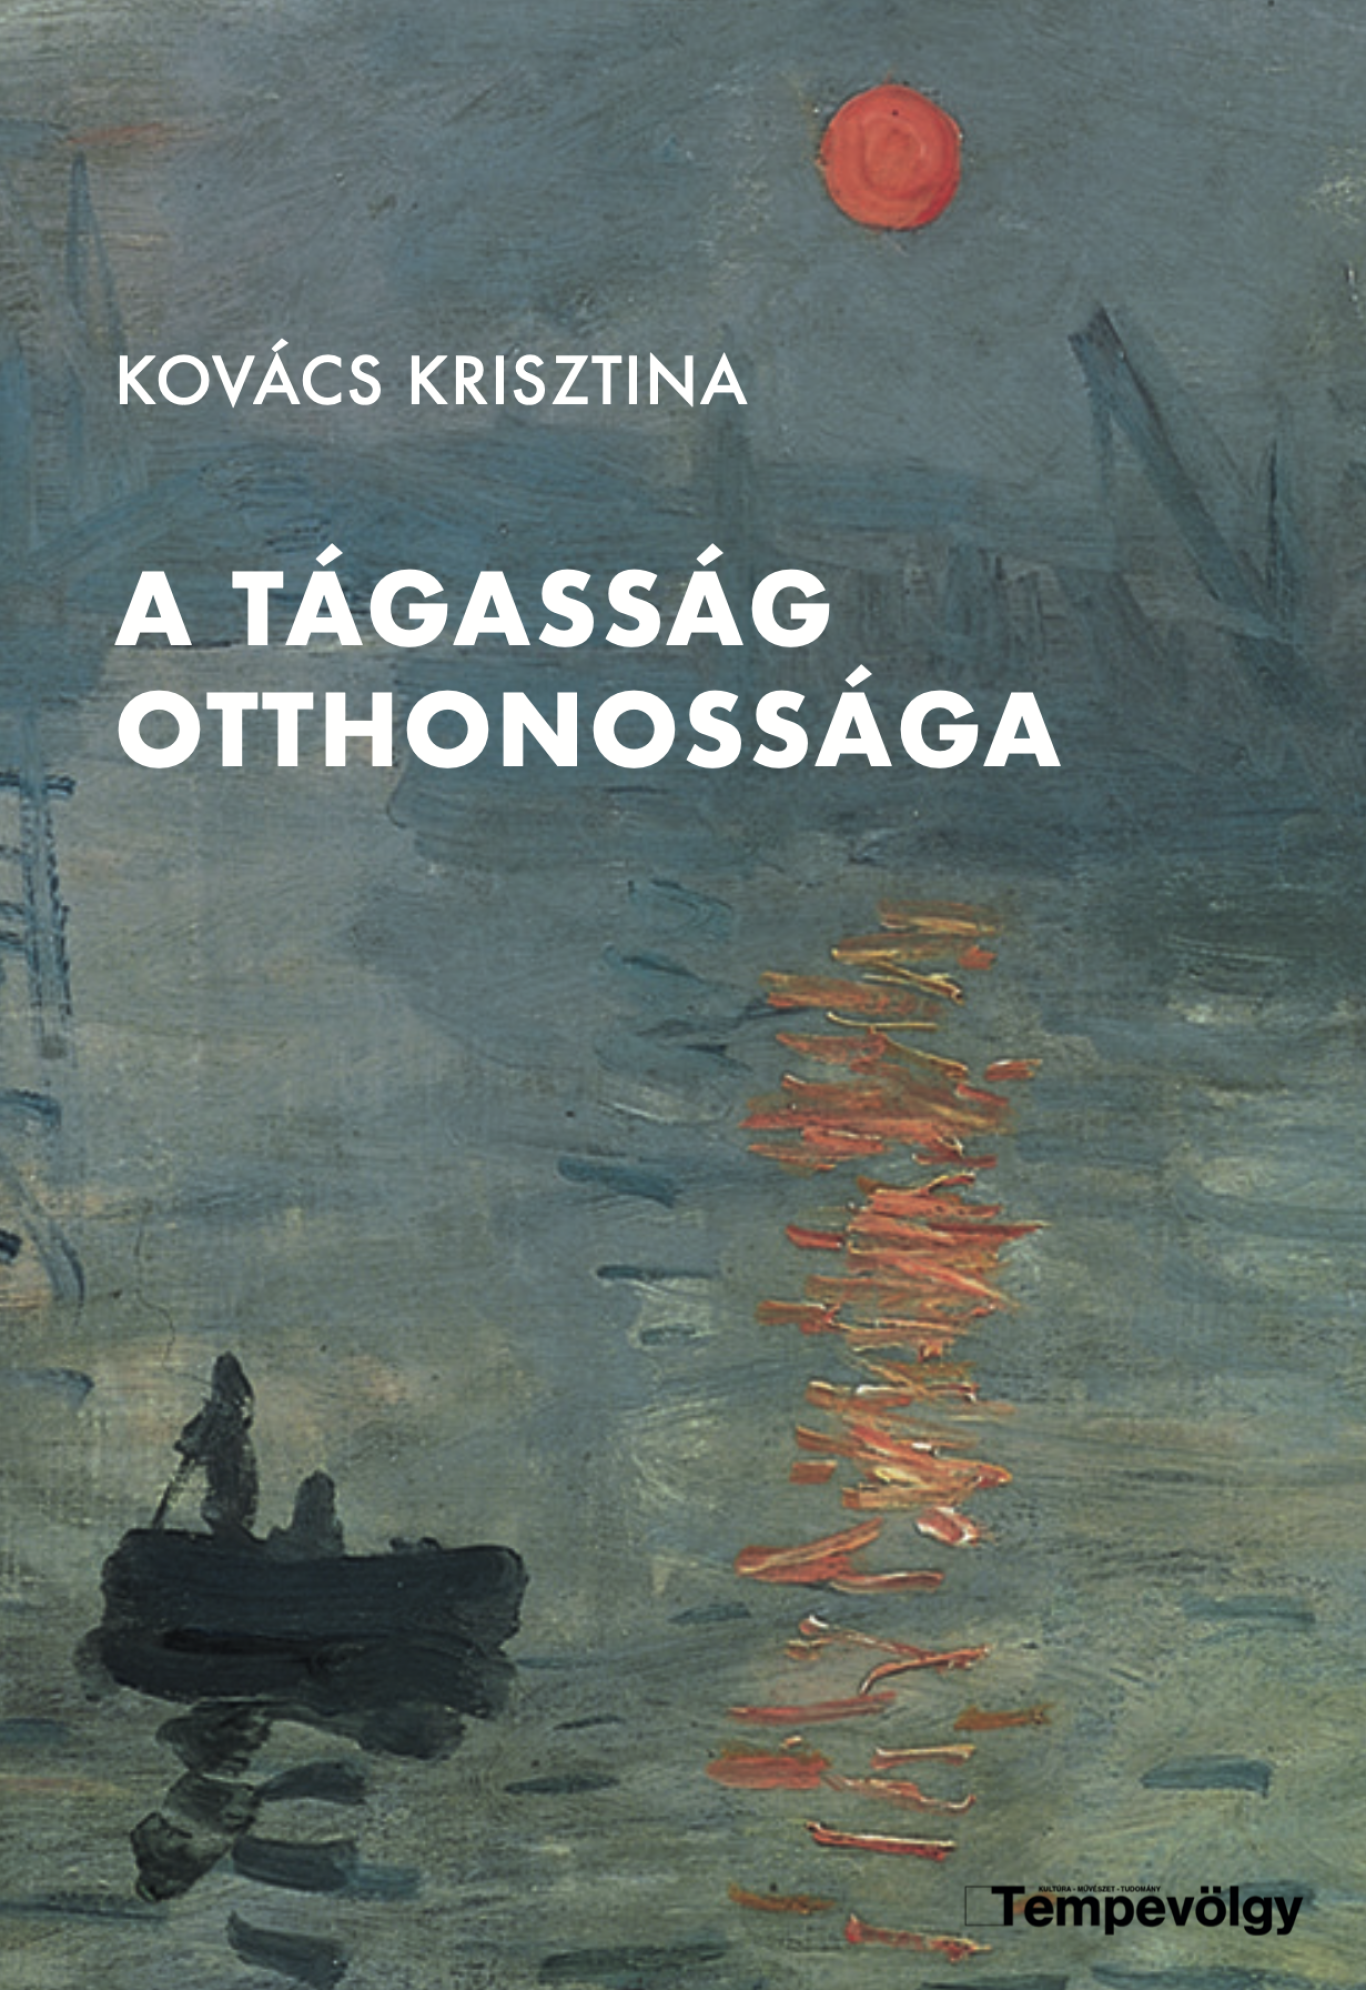 Kovács Krisztina: A TÁGASSÁG OTTHONOSSÁGA – Tanulmányok, kritikák